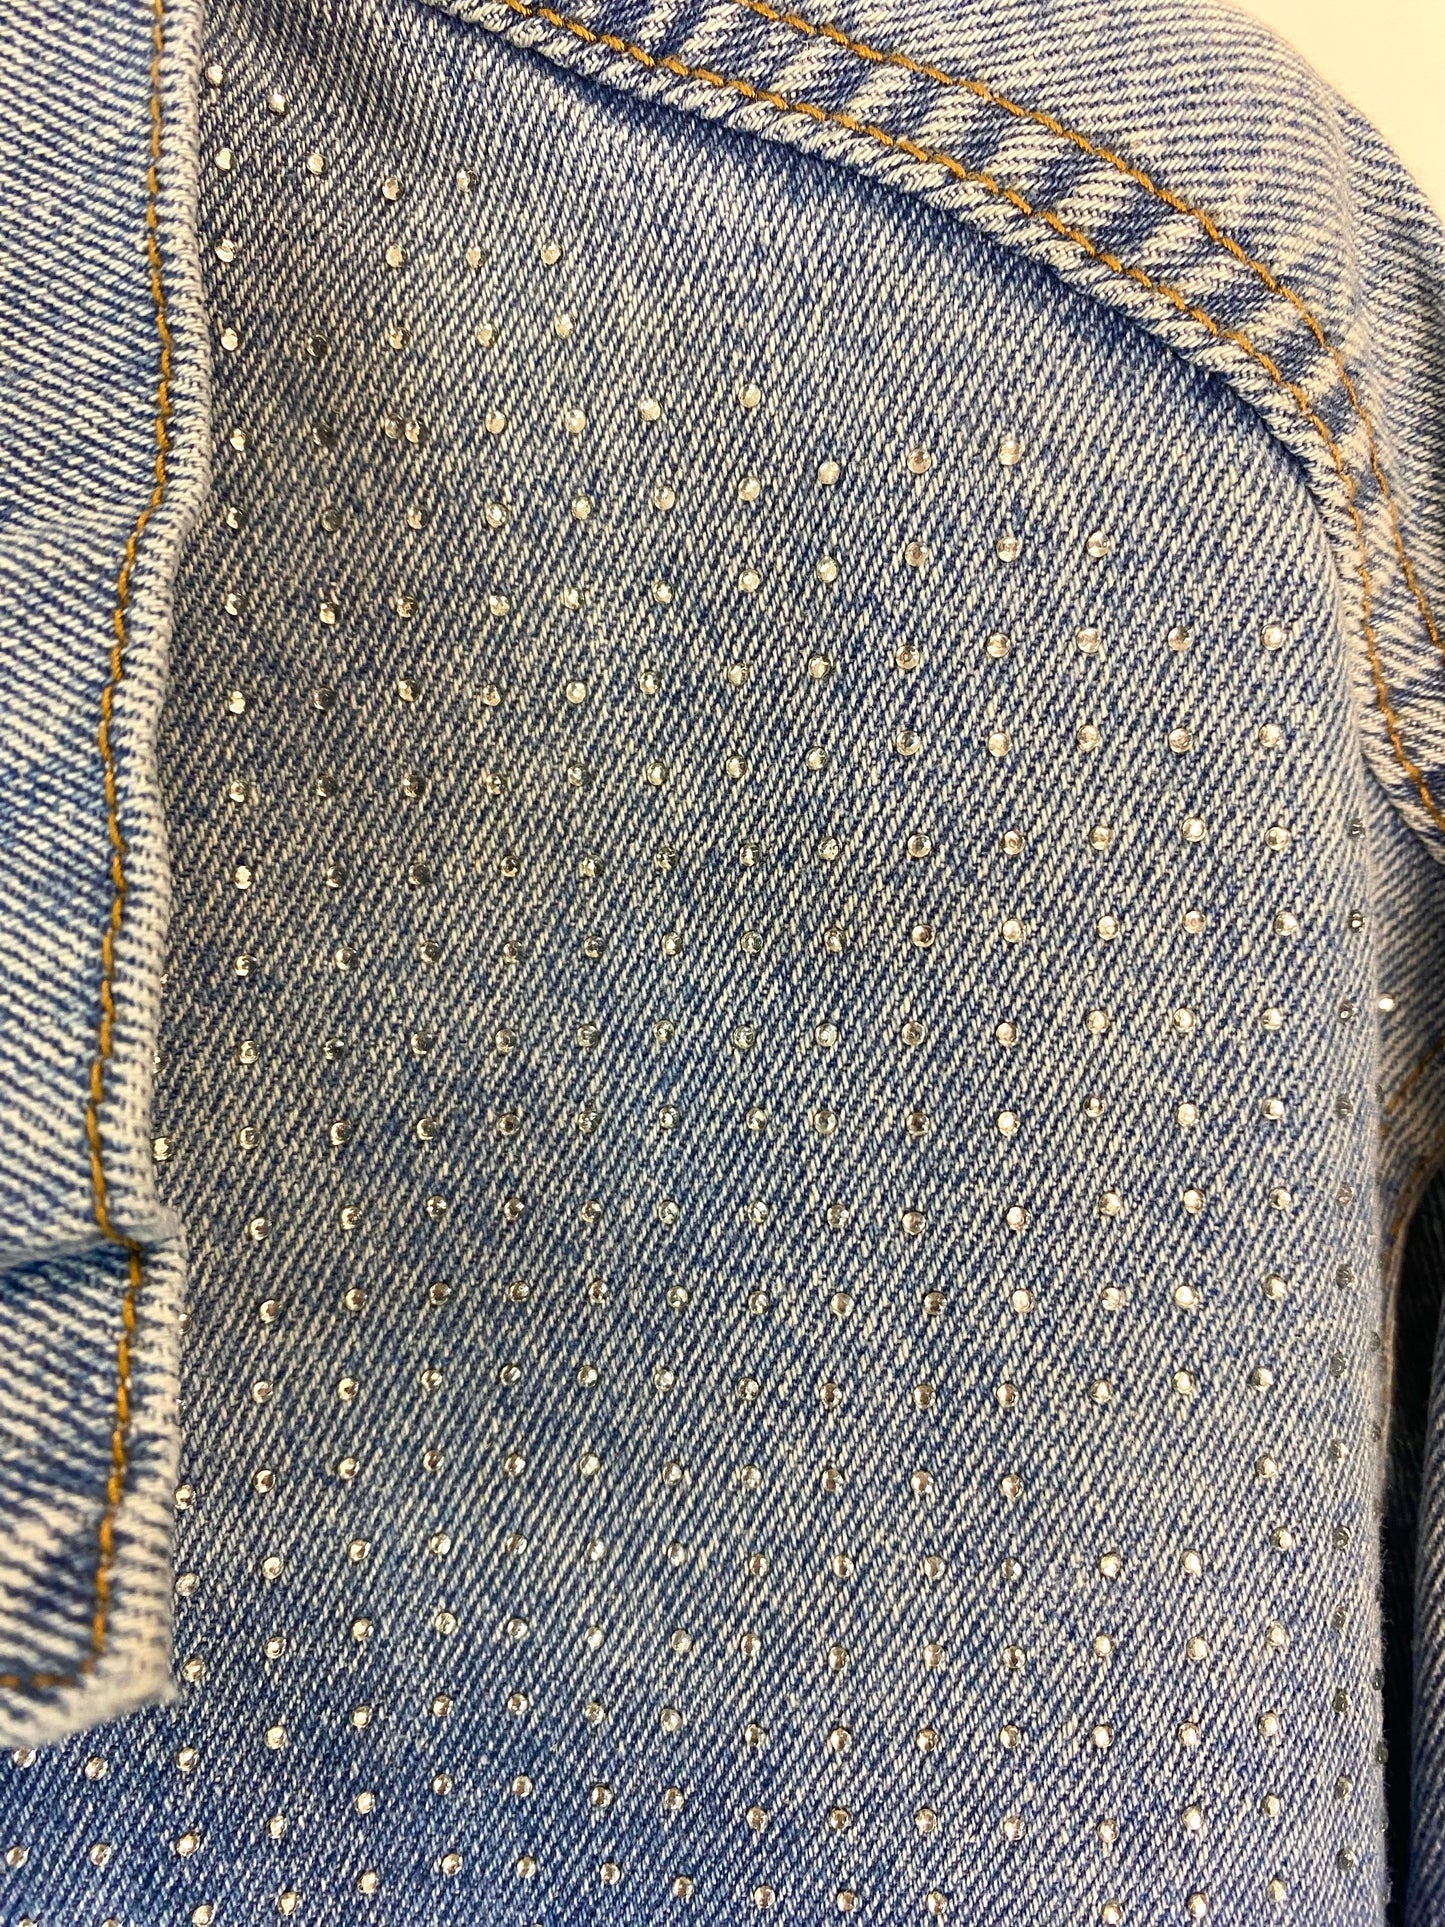 Giubbotto jeans strass